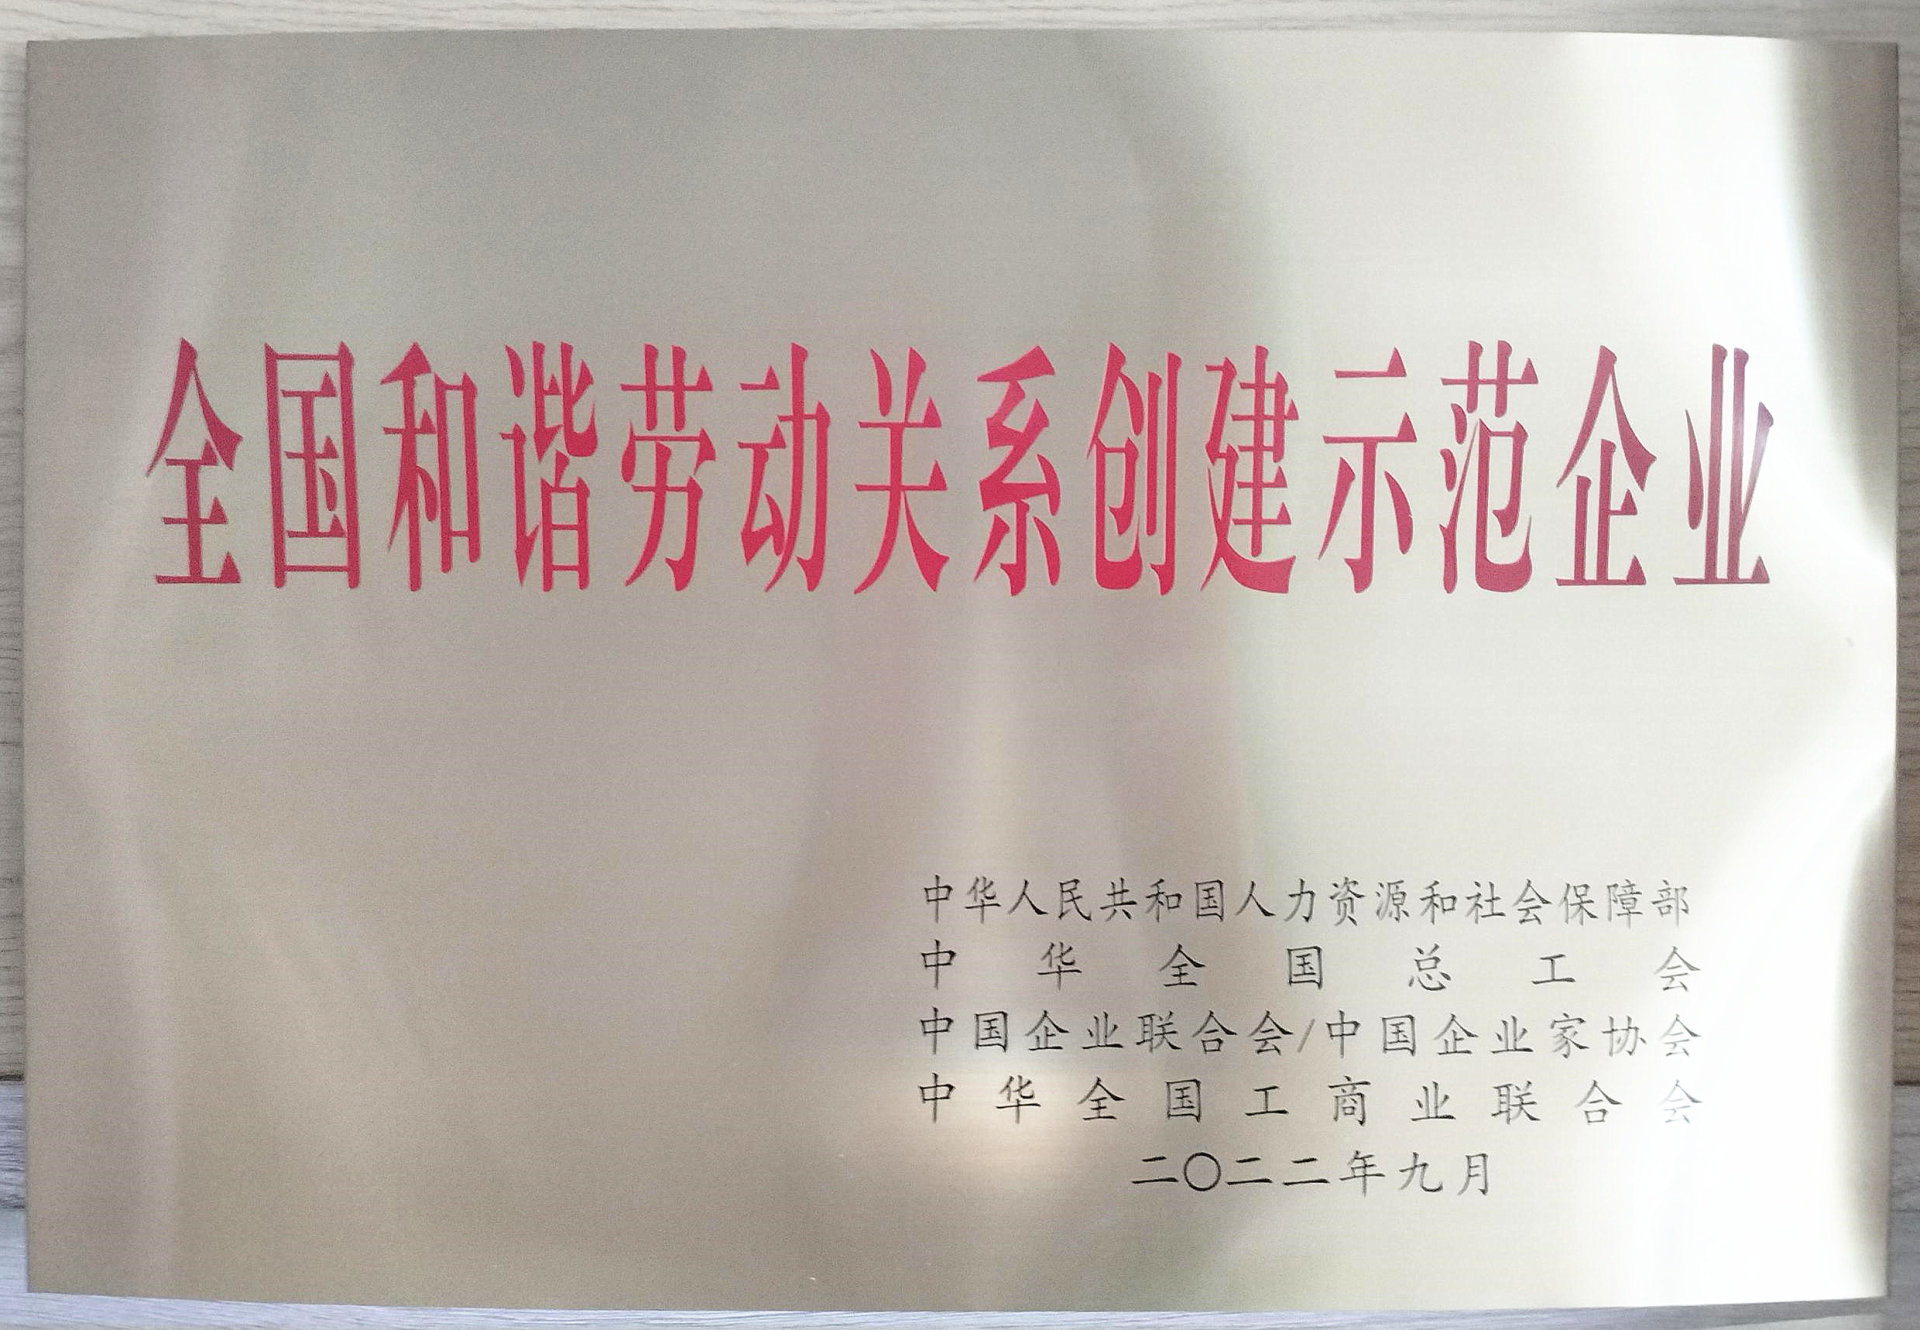 宇峰公司榮獲“全國和諧勞動關系創建示范企業”稱號